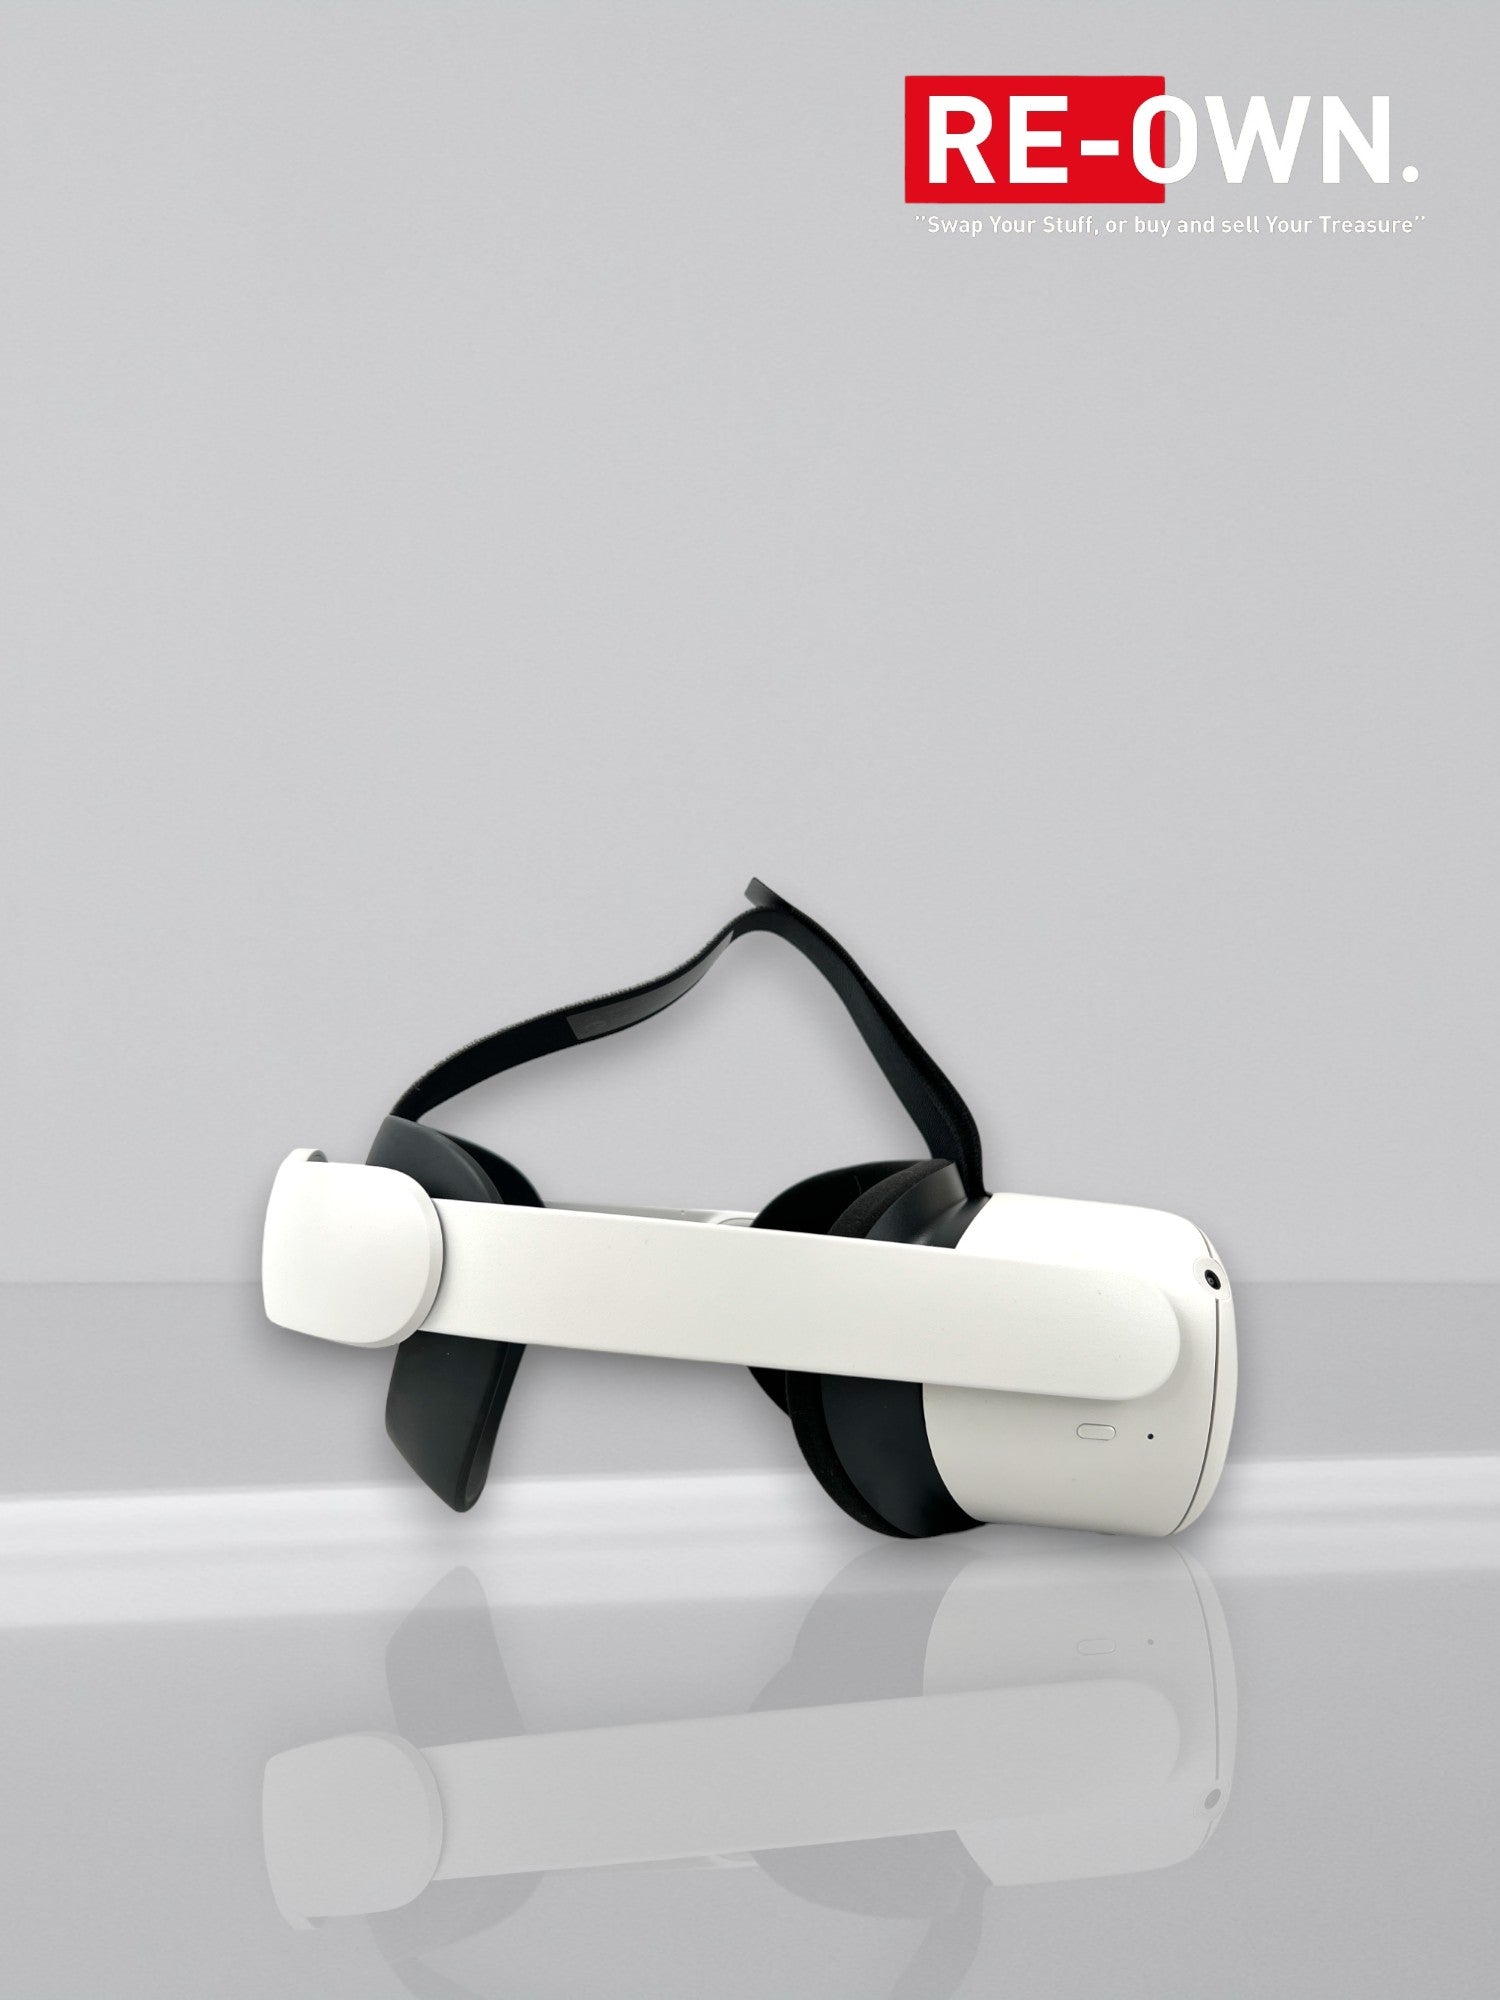 Oculus Quest 2 + 256GB + Elite Strap VR bril